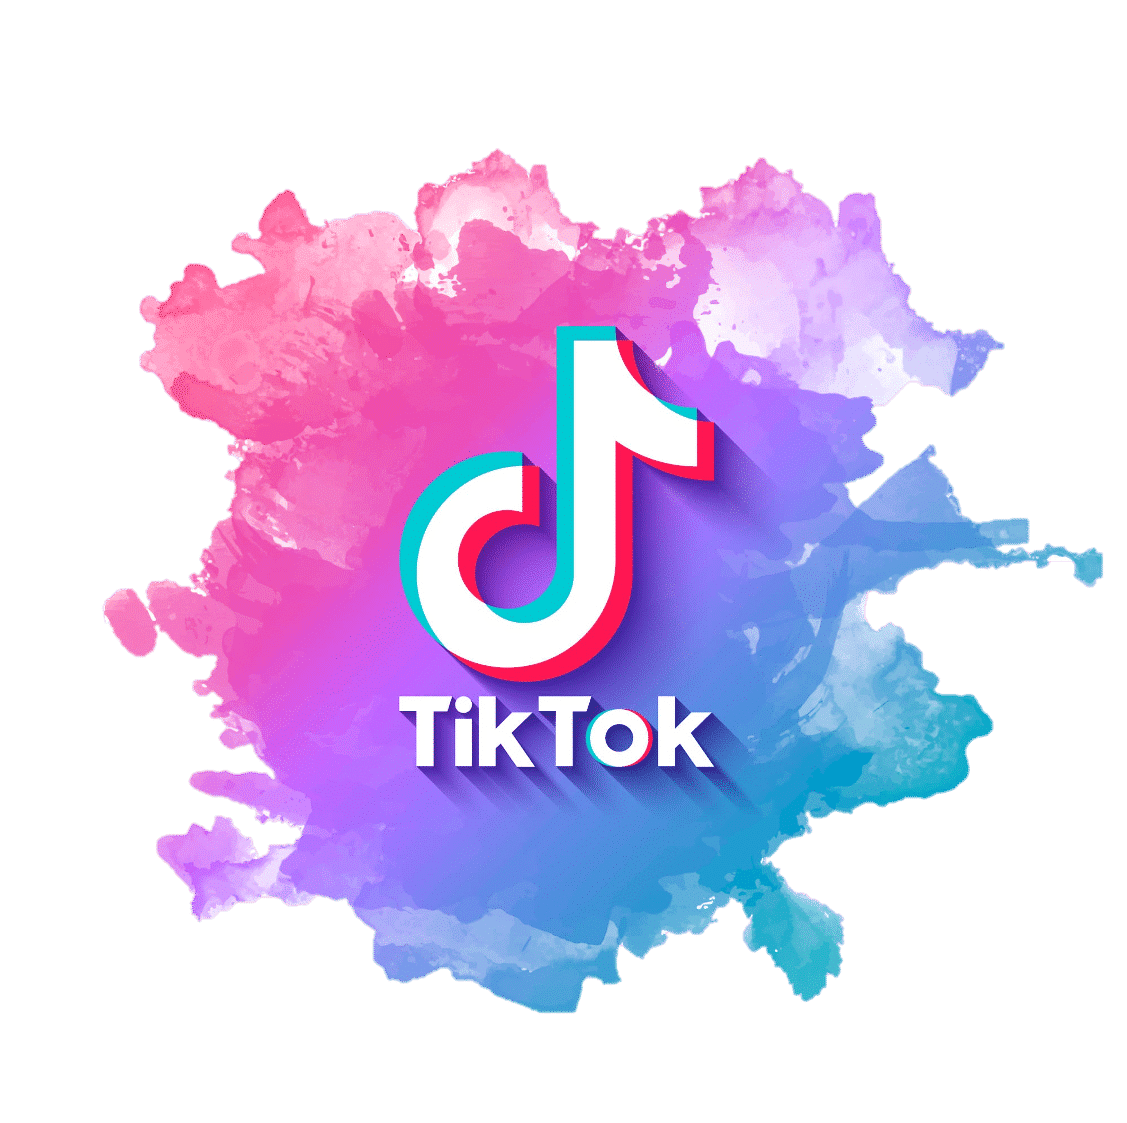 estrategia de comunicación Tiktok